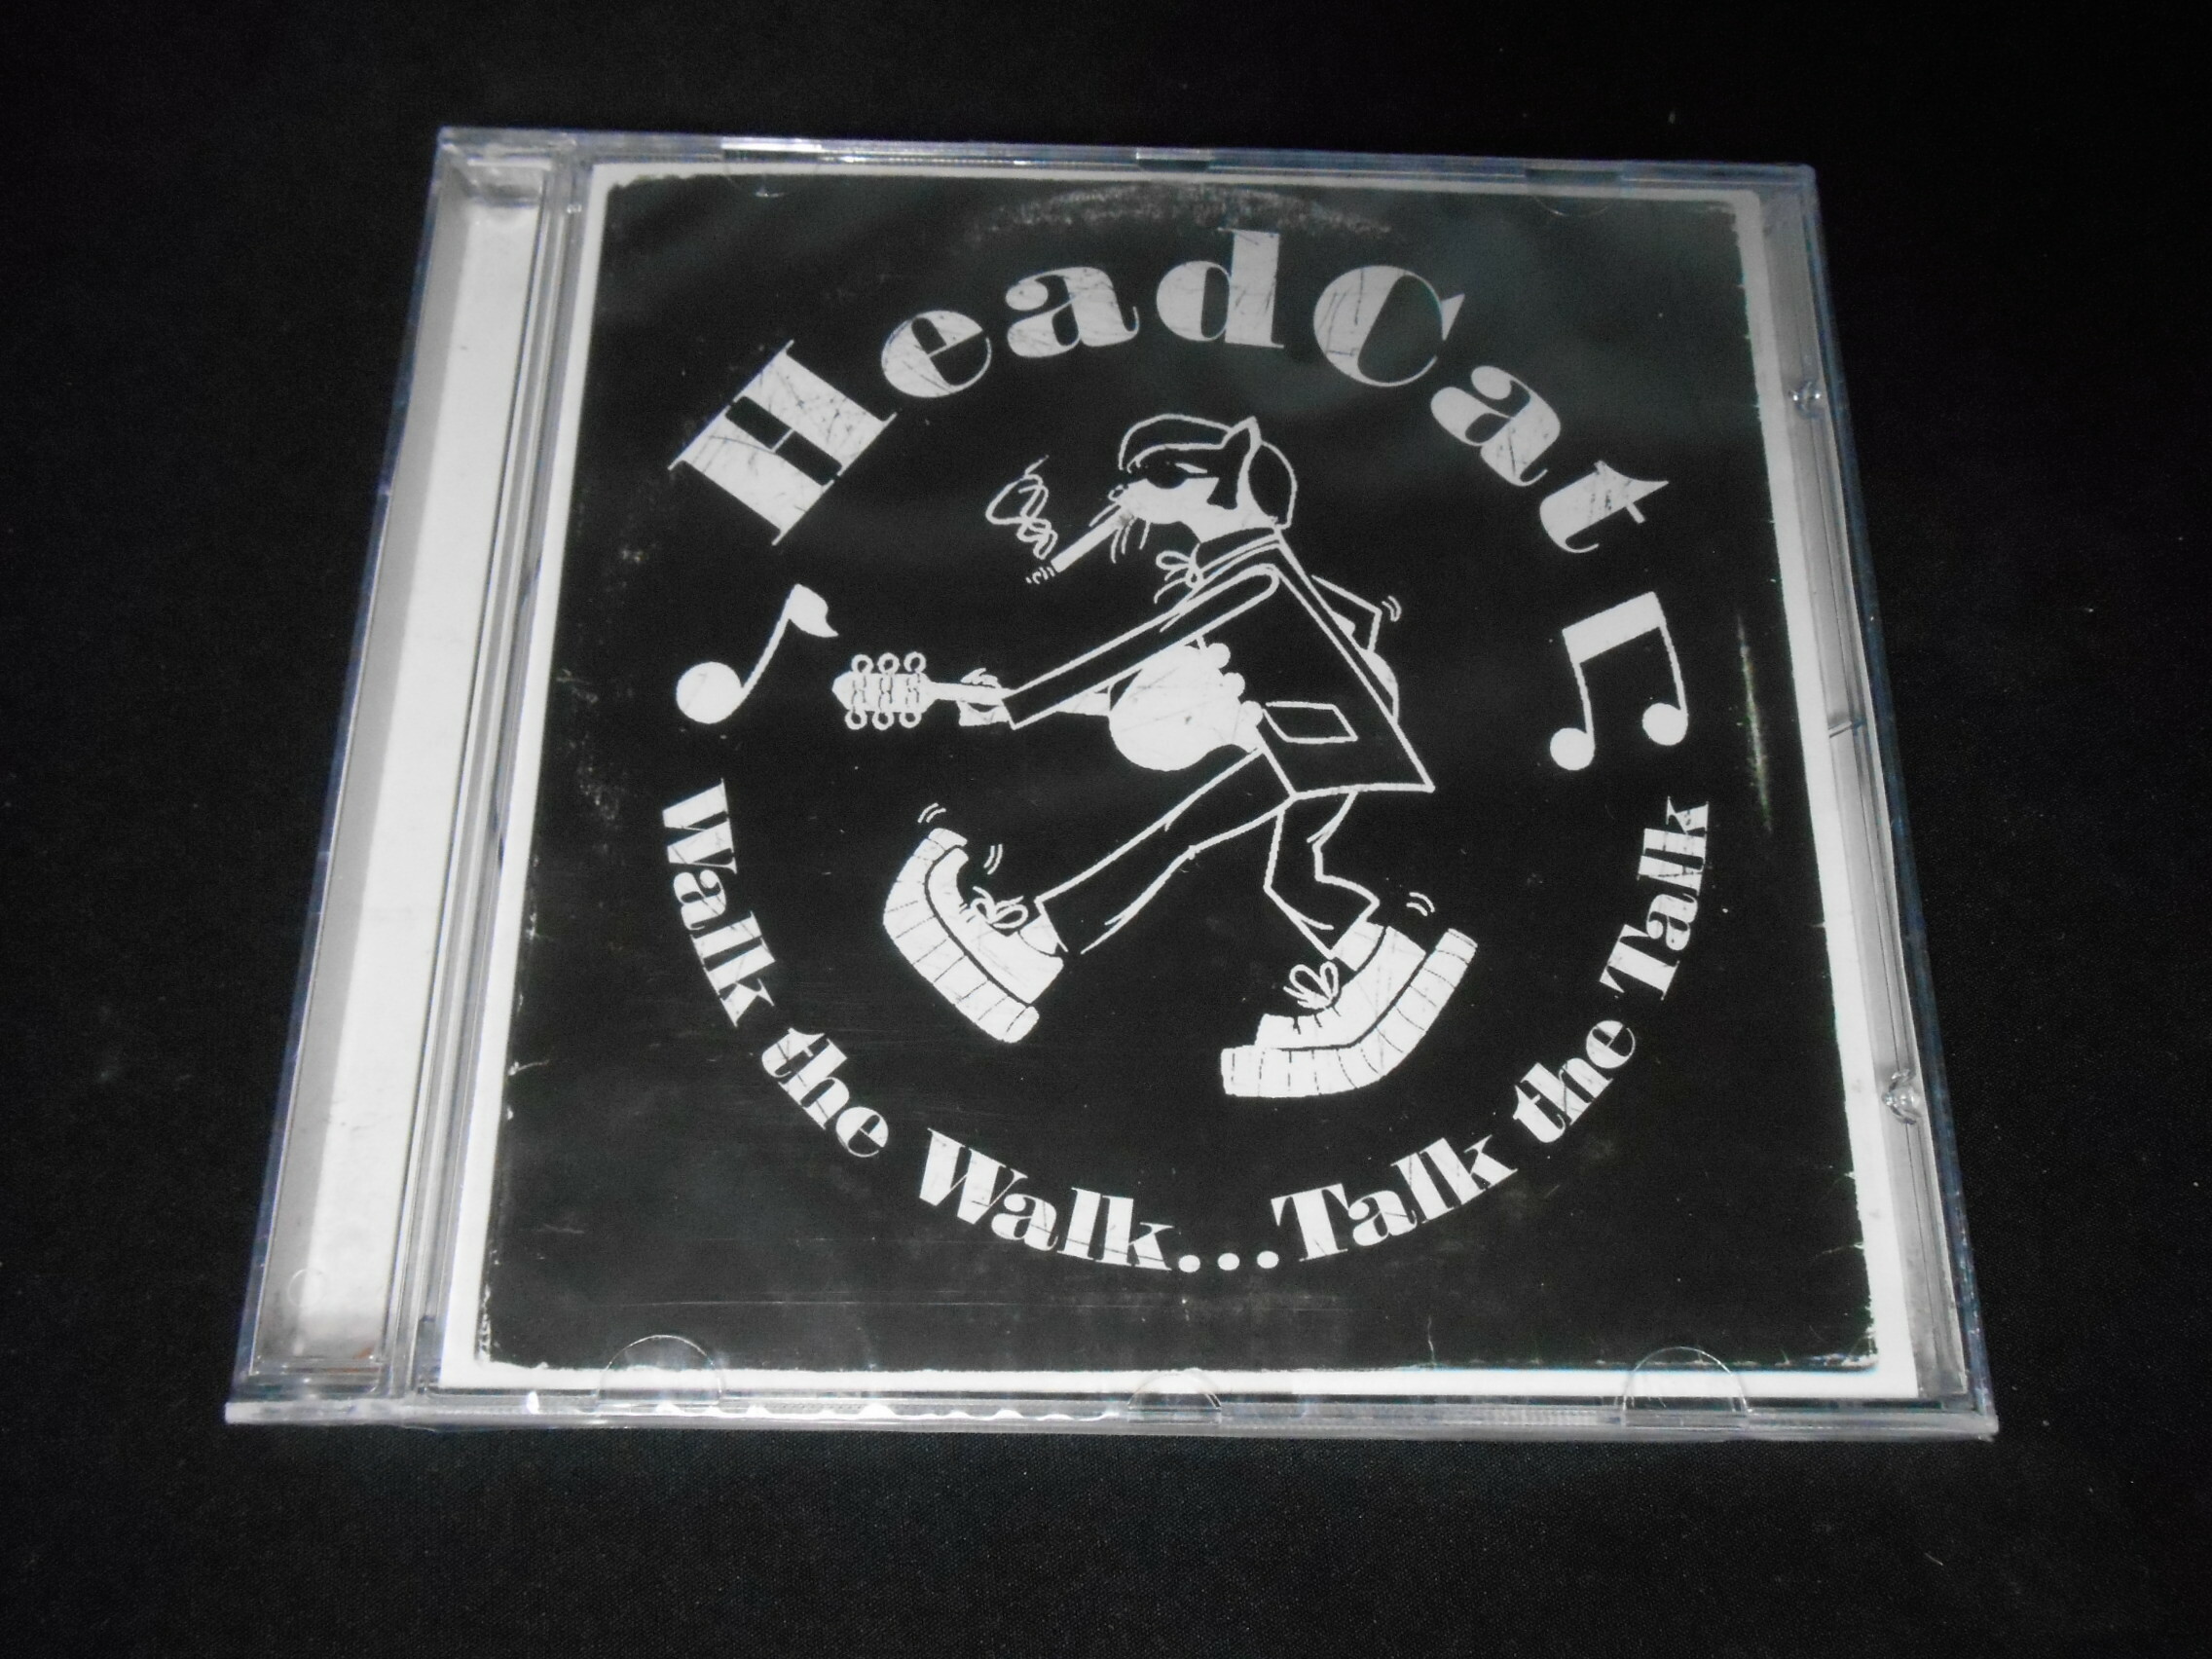 CD - Headcat - Walk the Walk... Talk the Talk (IMP)